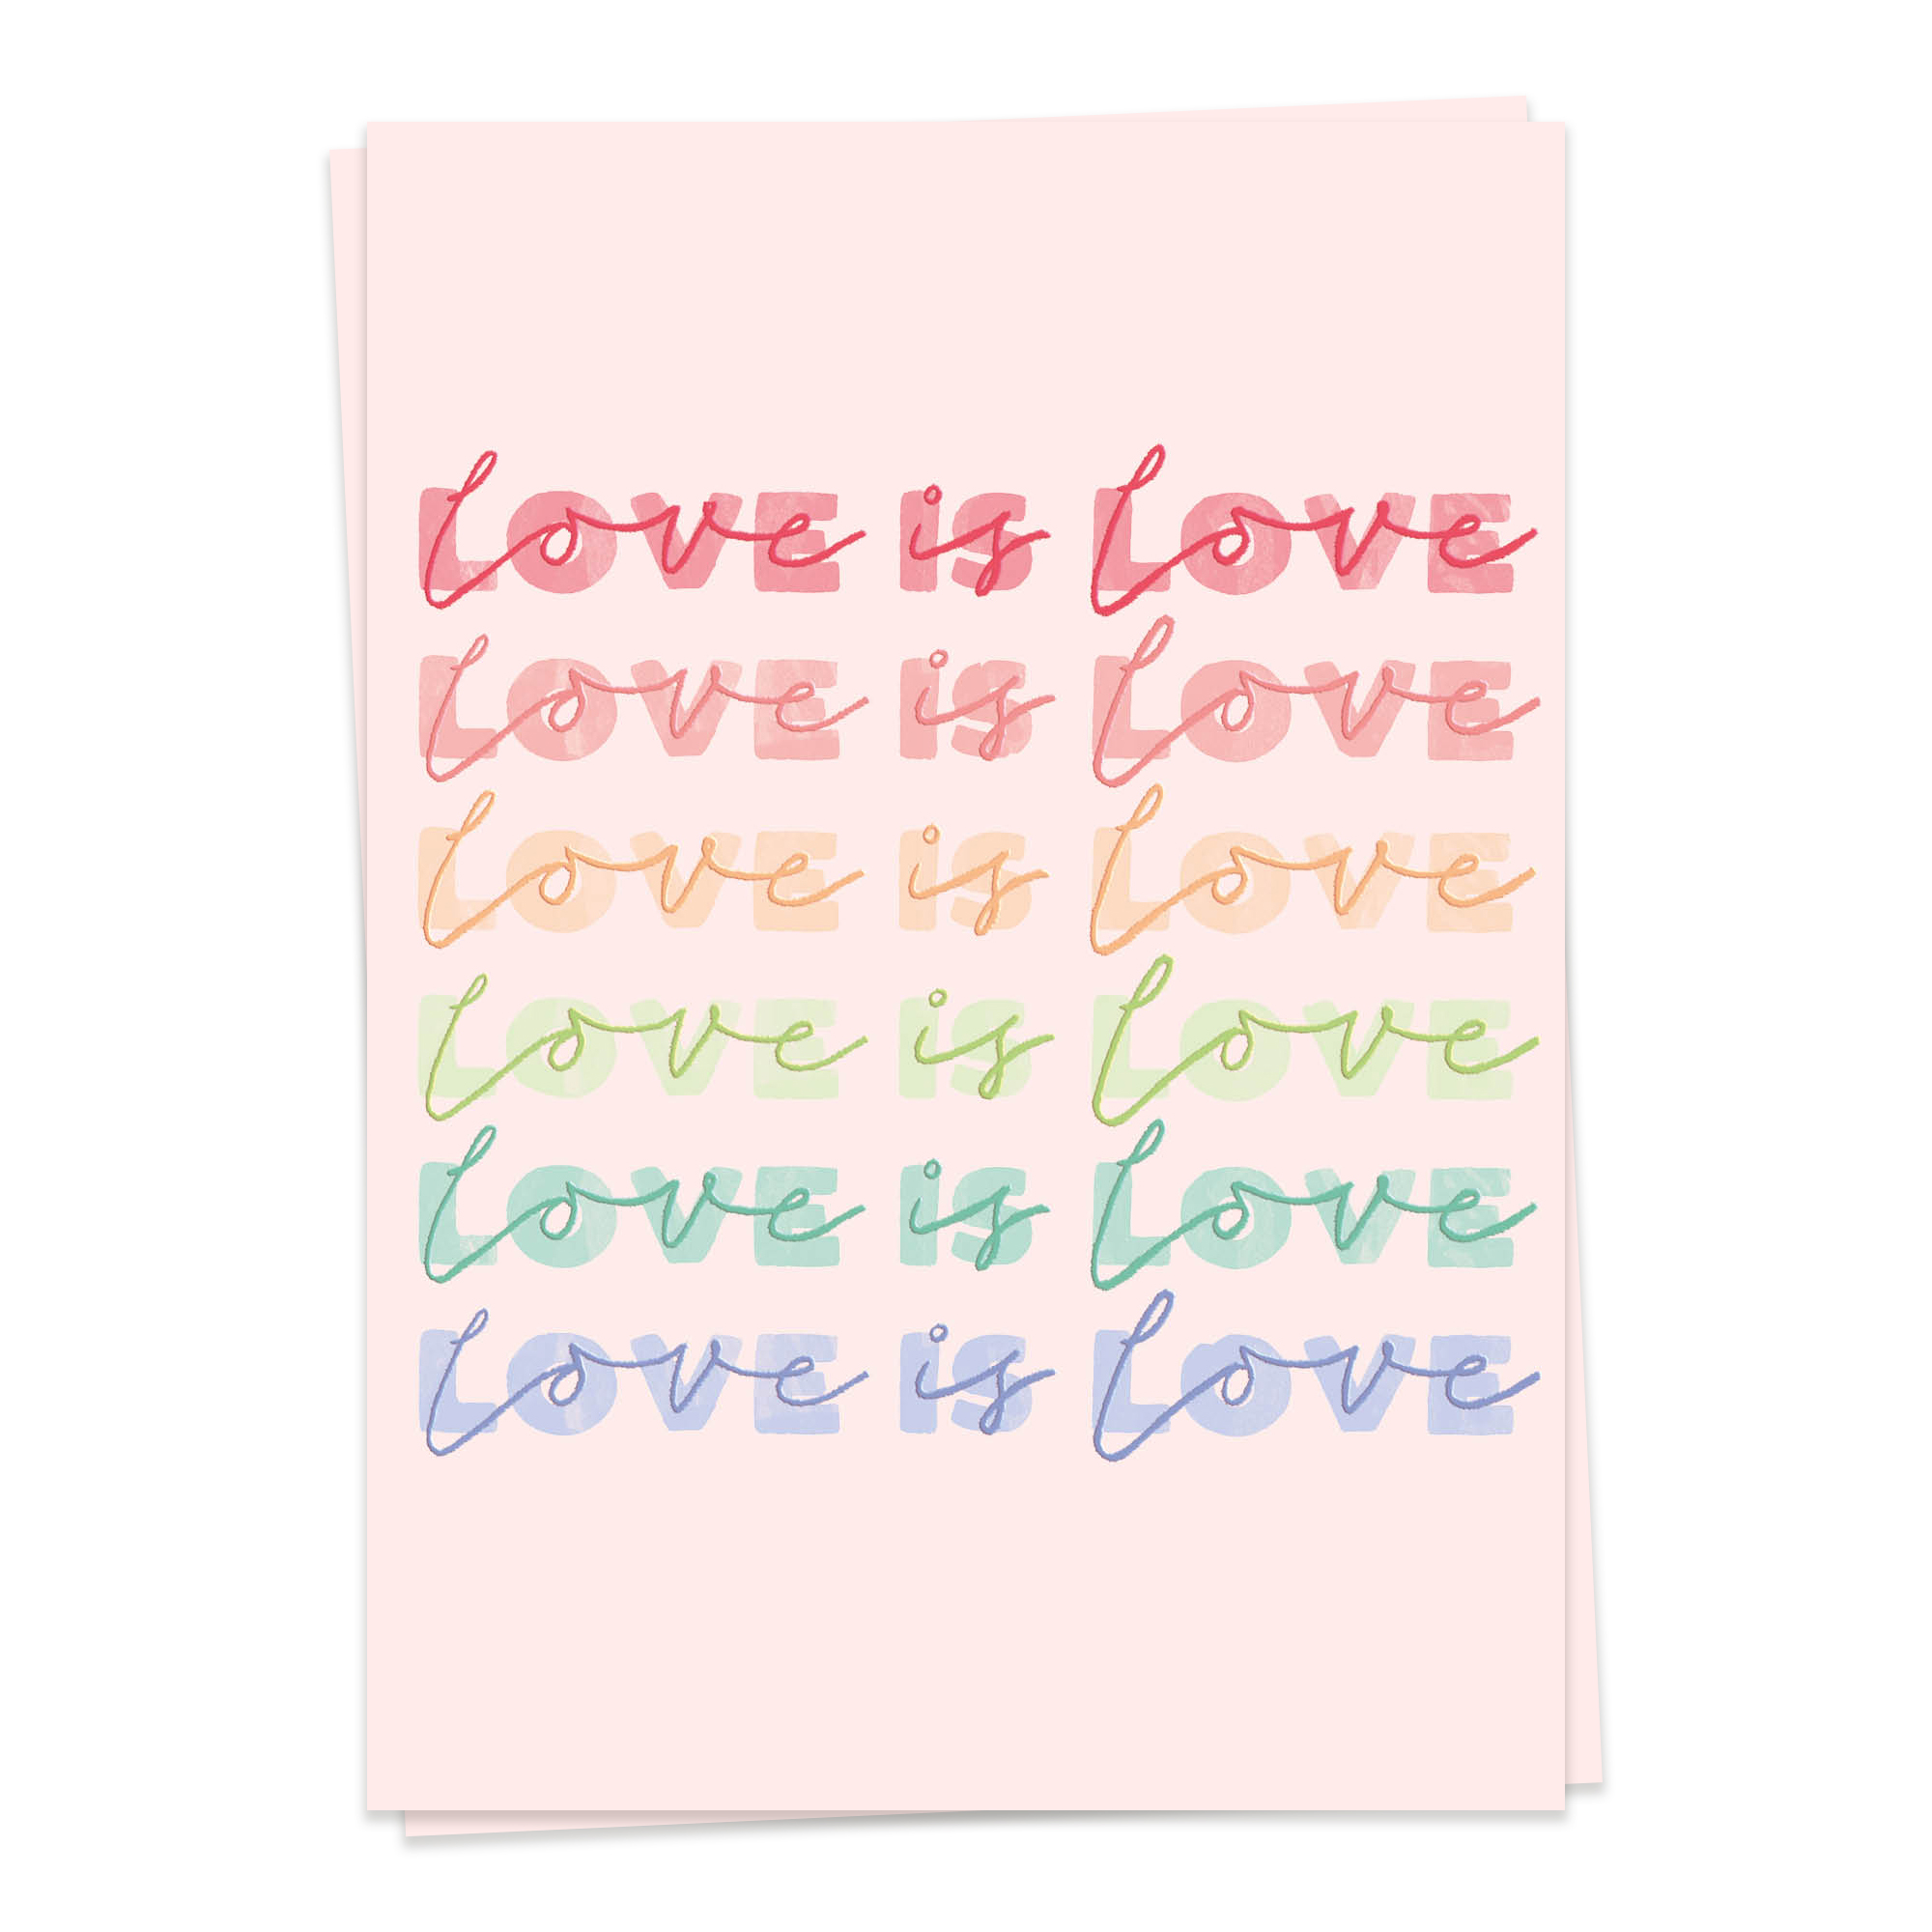 LGBTQ –Love is love